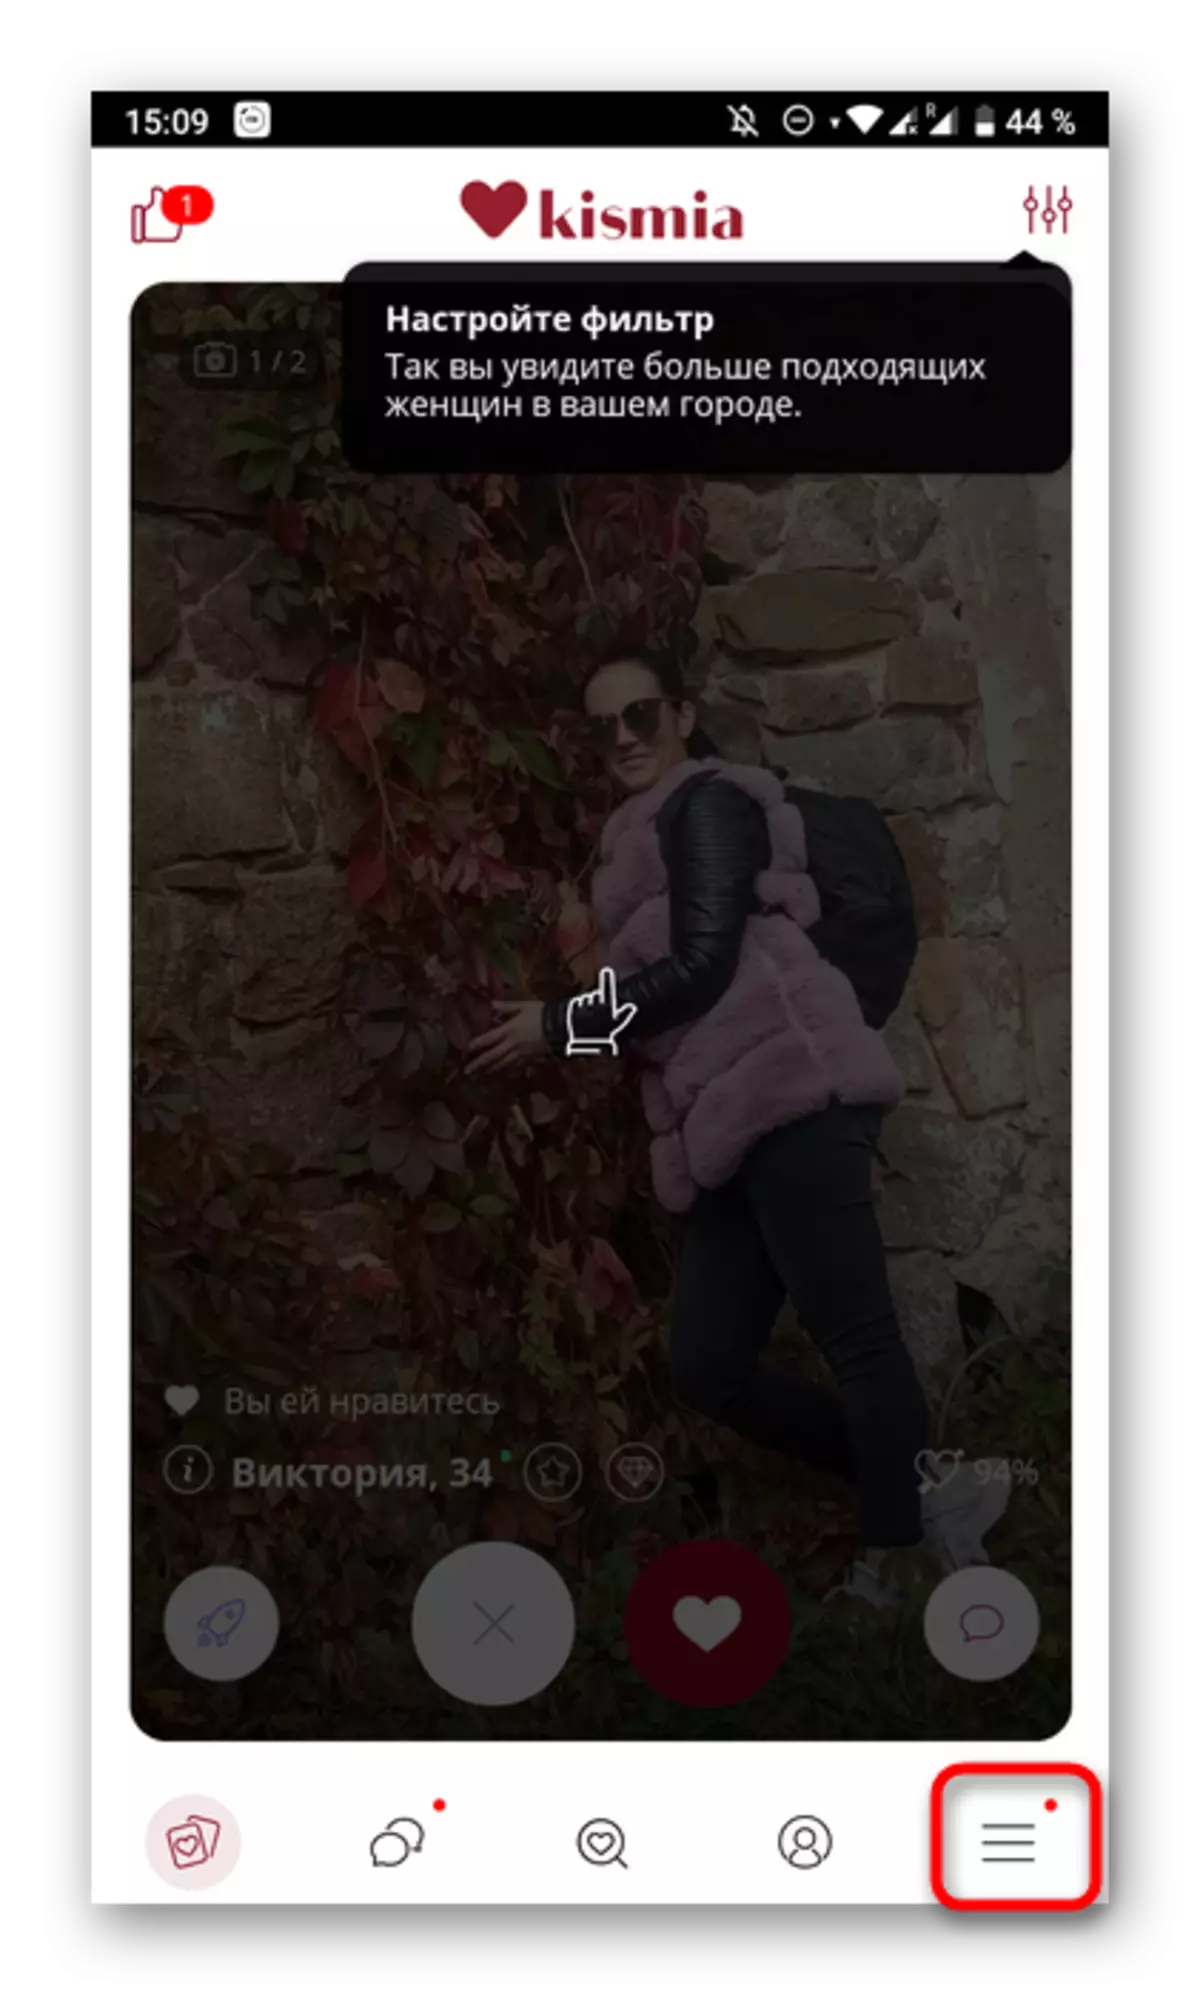 Odpiranje menija za odstranitev profila v mobilni aplikaciji za dating Kismia